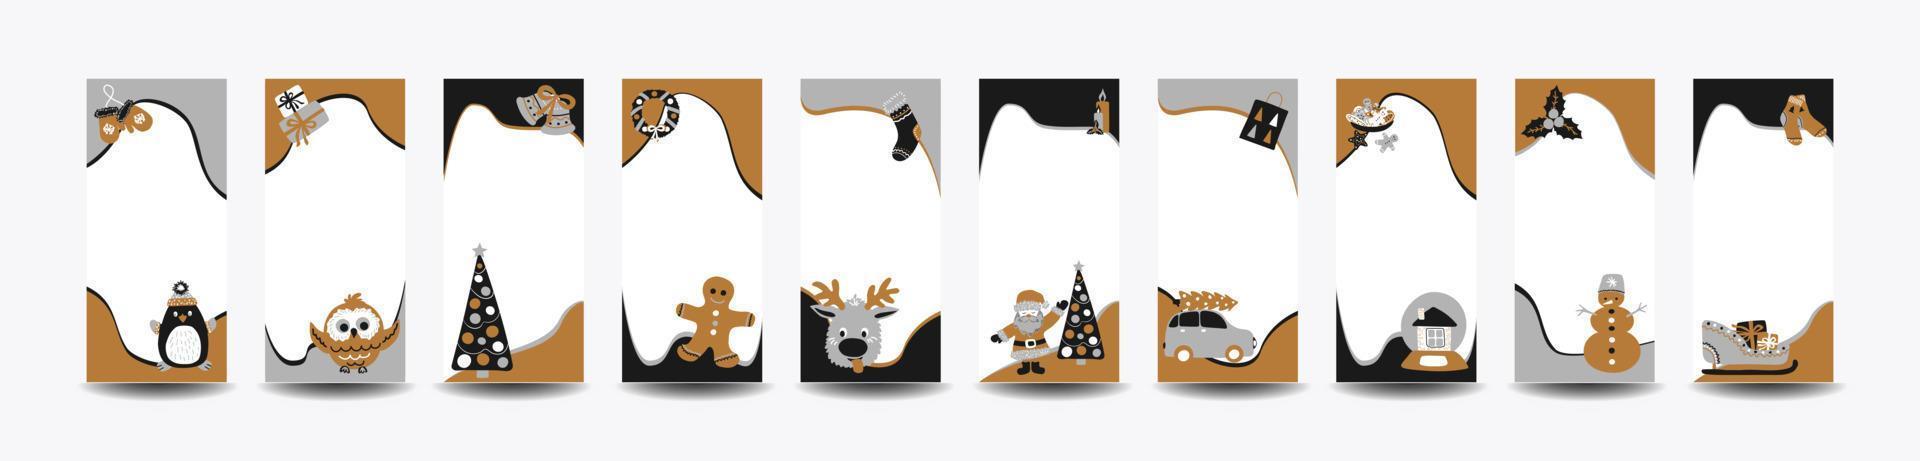 conjunto de 10 modelos de histórias de feliz natal para redes sociais no estilo de desenho de mão simples escandinavo. molduras de férias em camadas para fotos com personagens fofinhos - papai noel, rena, pão de mel. vetor